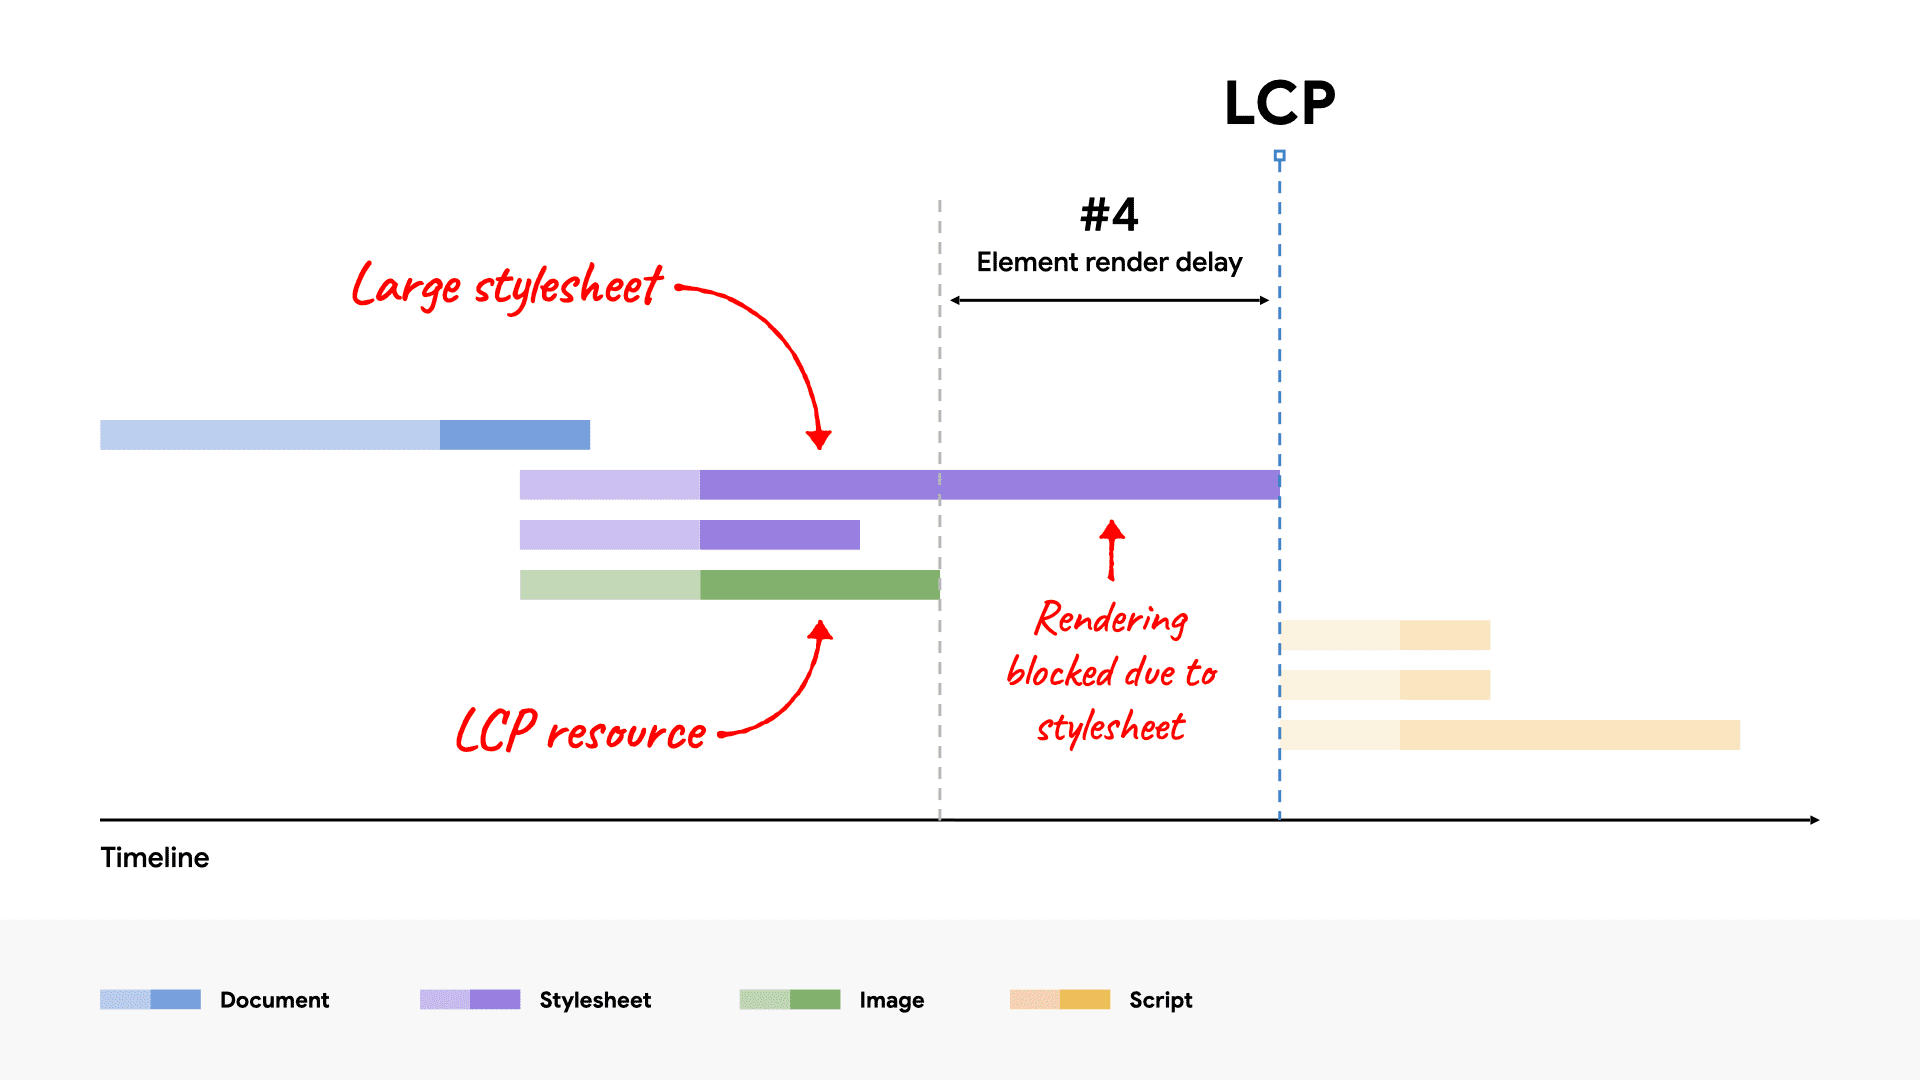 رسم تخطيطي للعرض بدون انقطاع في الشبكة يعرض ملف CSS كبيرًا يحظر عرض عنصر LCP لأنه يستغرق وقتًا أطول في التحميل من مورد LCP